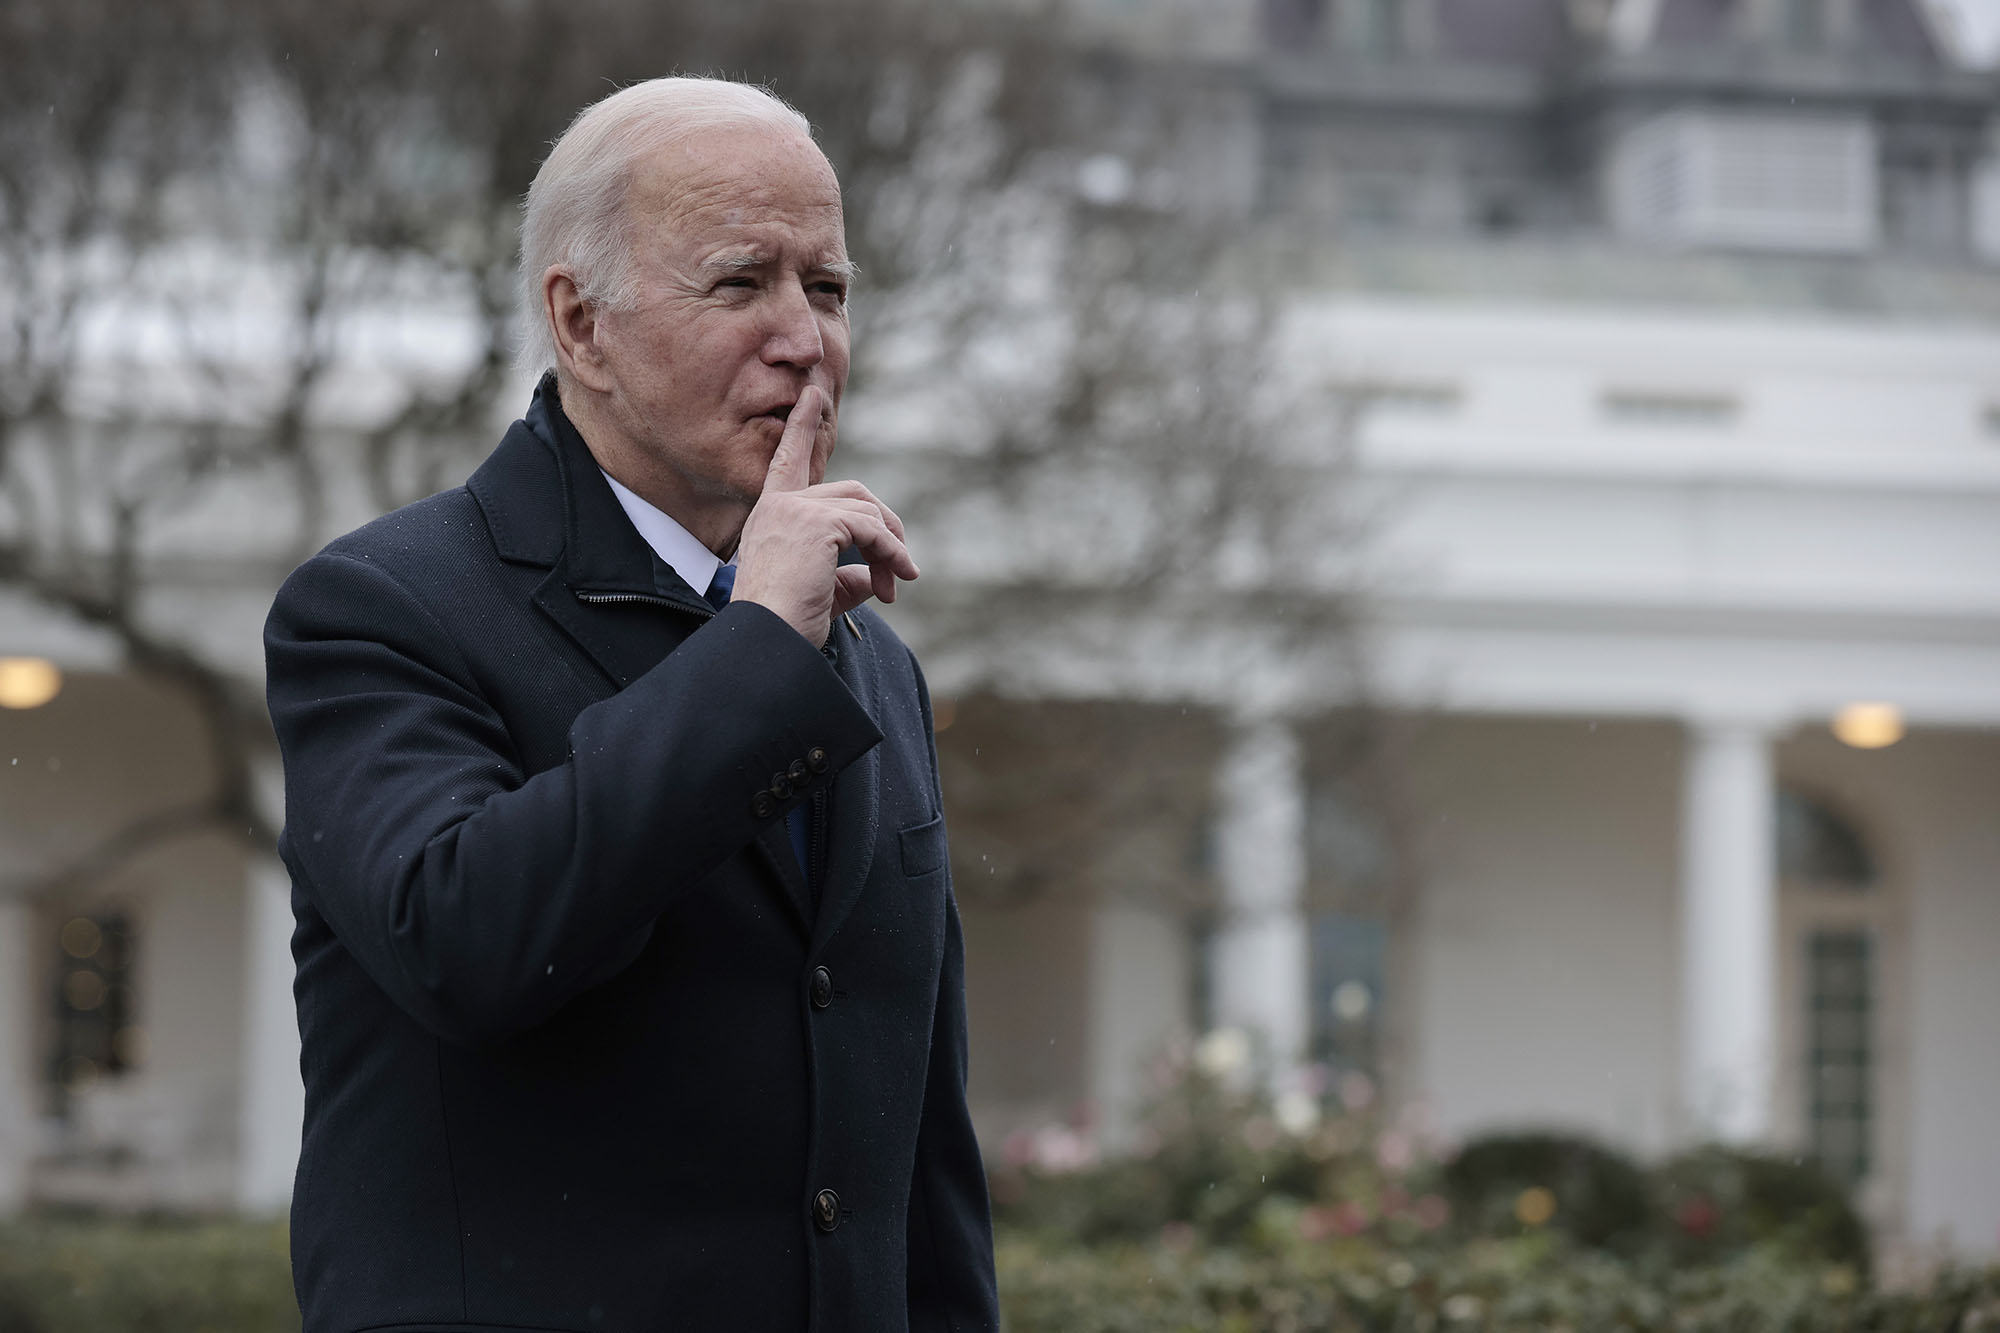 President Biden holds pointer finger to mouth